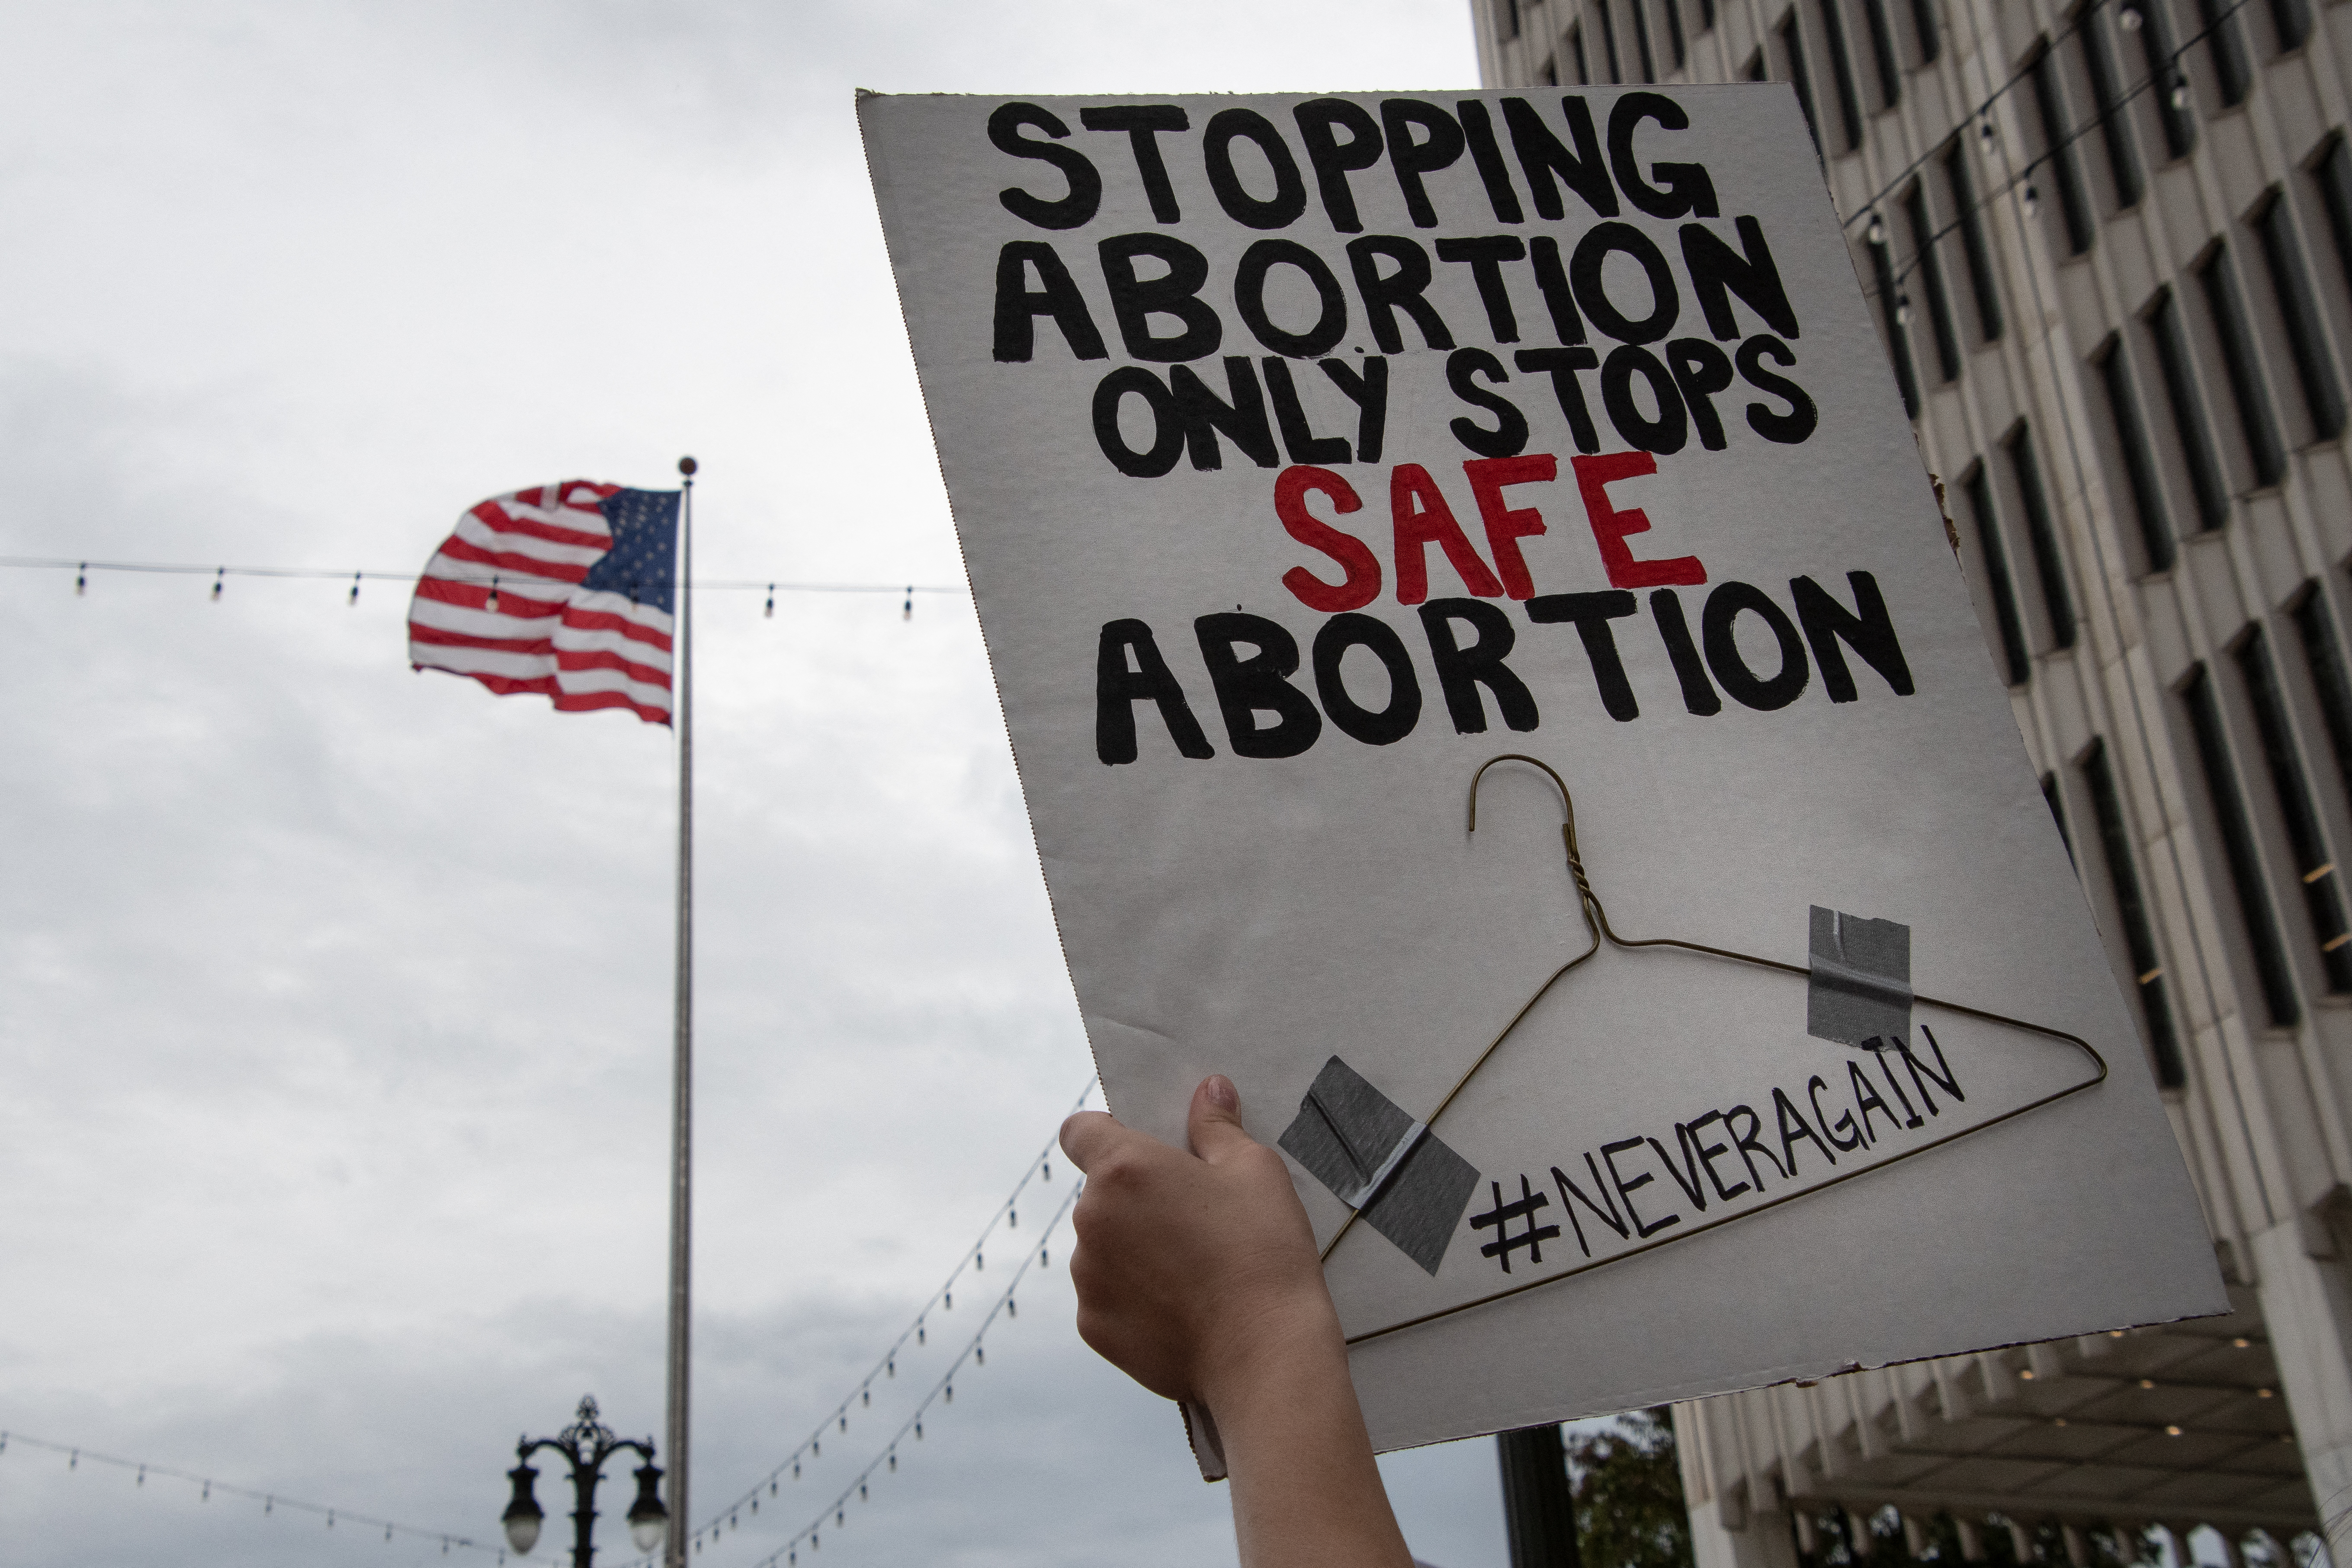 Texasban egy bírósági döntés után ismét hatályba lépett az abortusztilalom